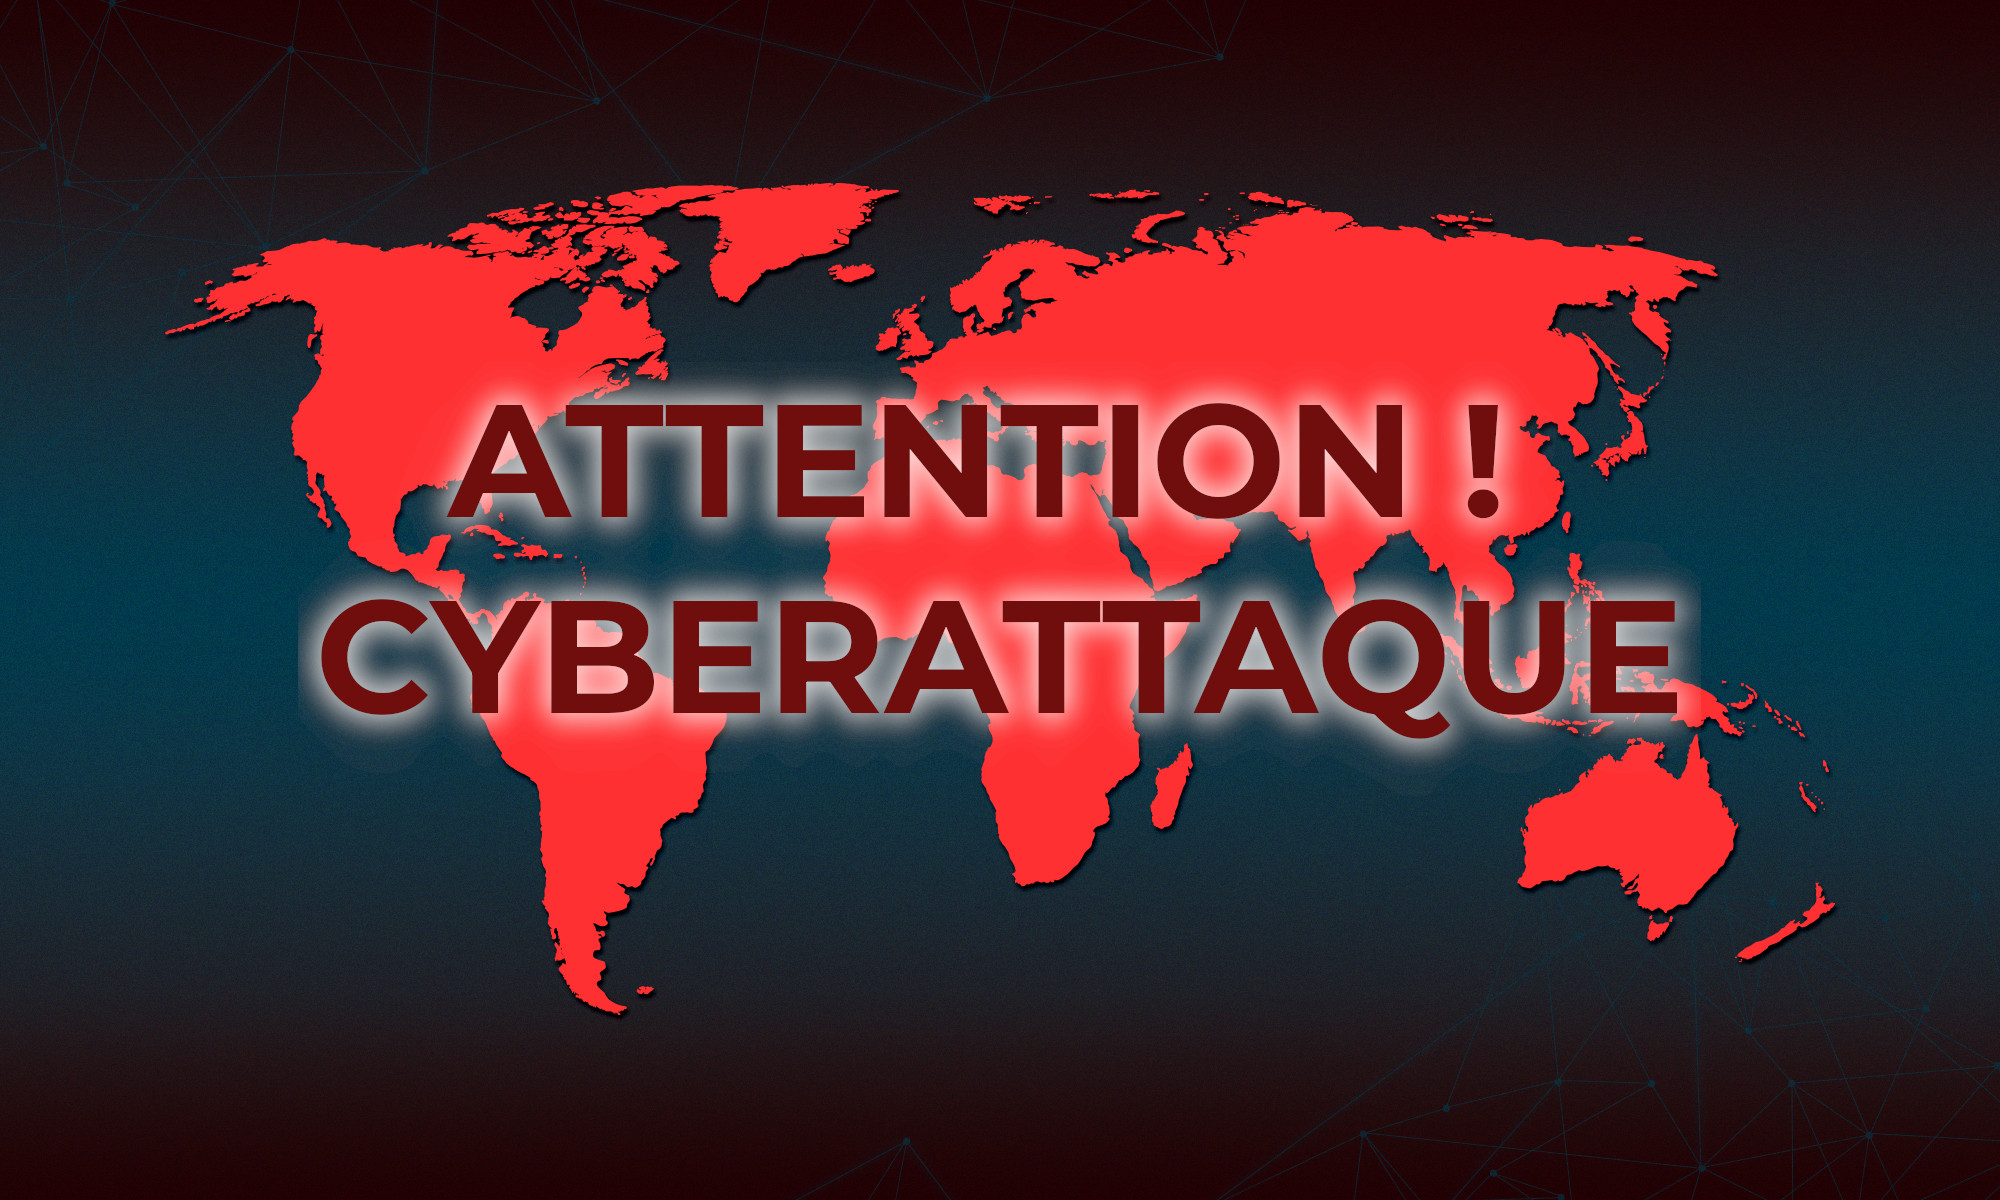 Attention ! Cyberattaque